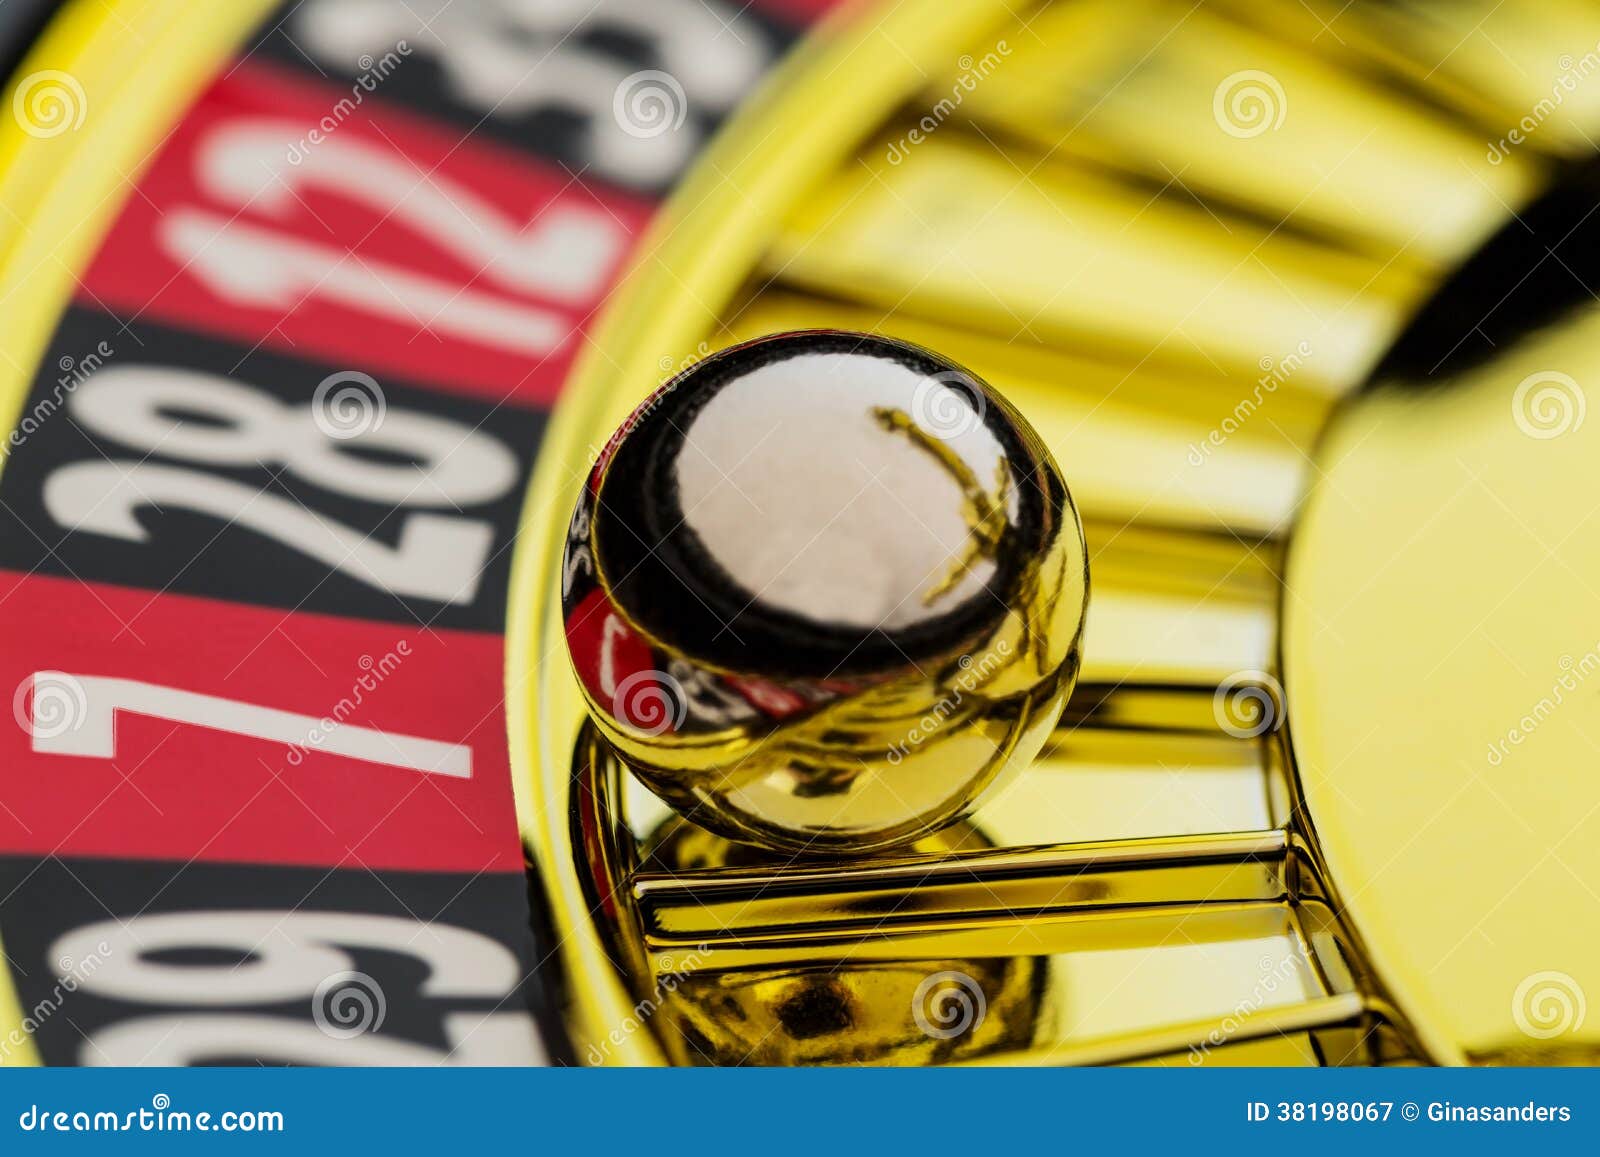 Technique roulette casino rouge noir